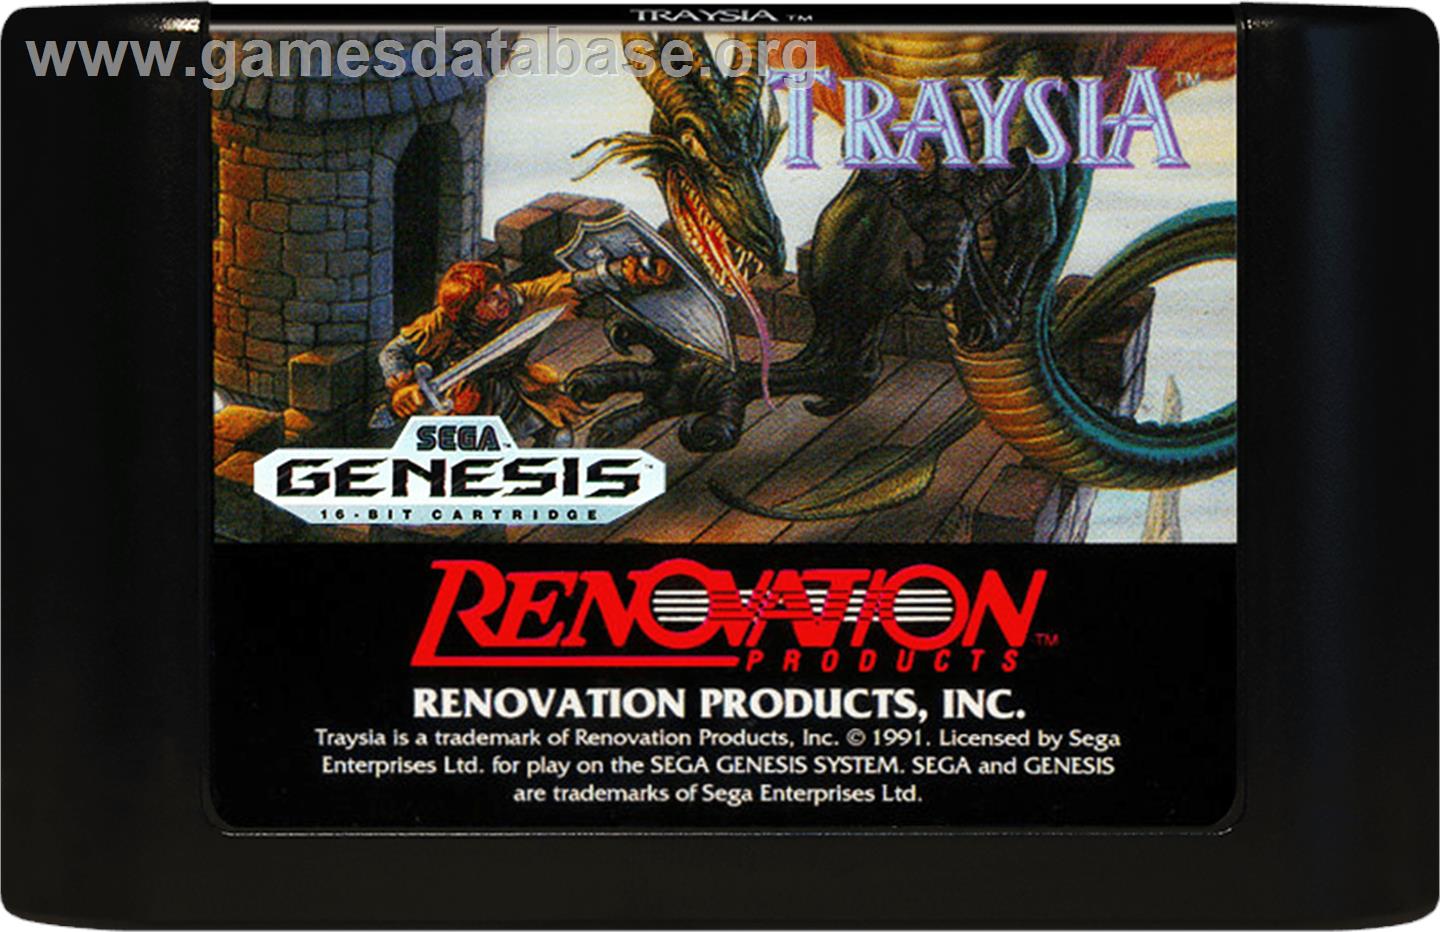 Traysia - Sega Genesis - Artwork - Cartridge